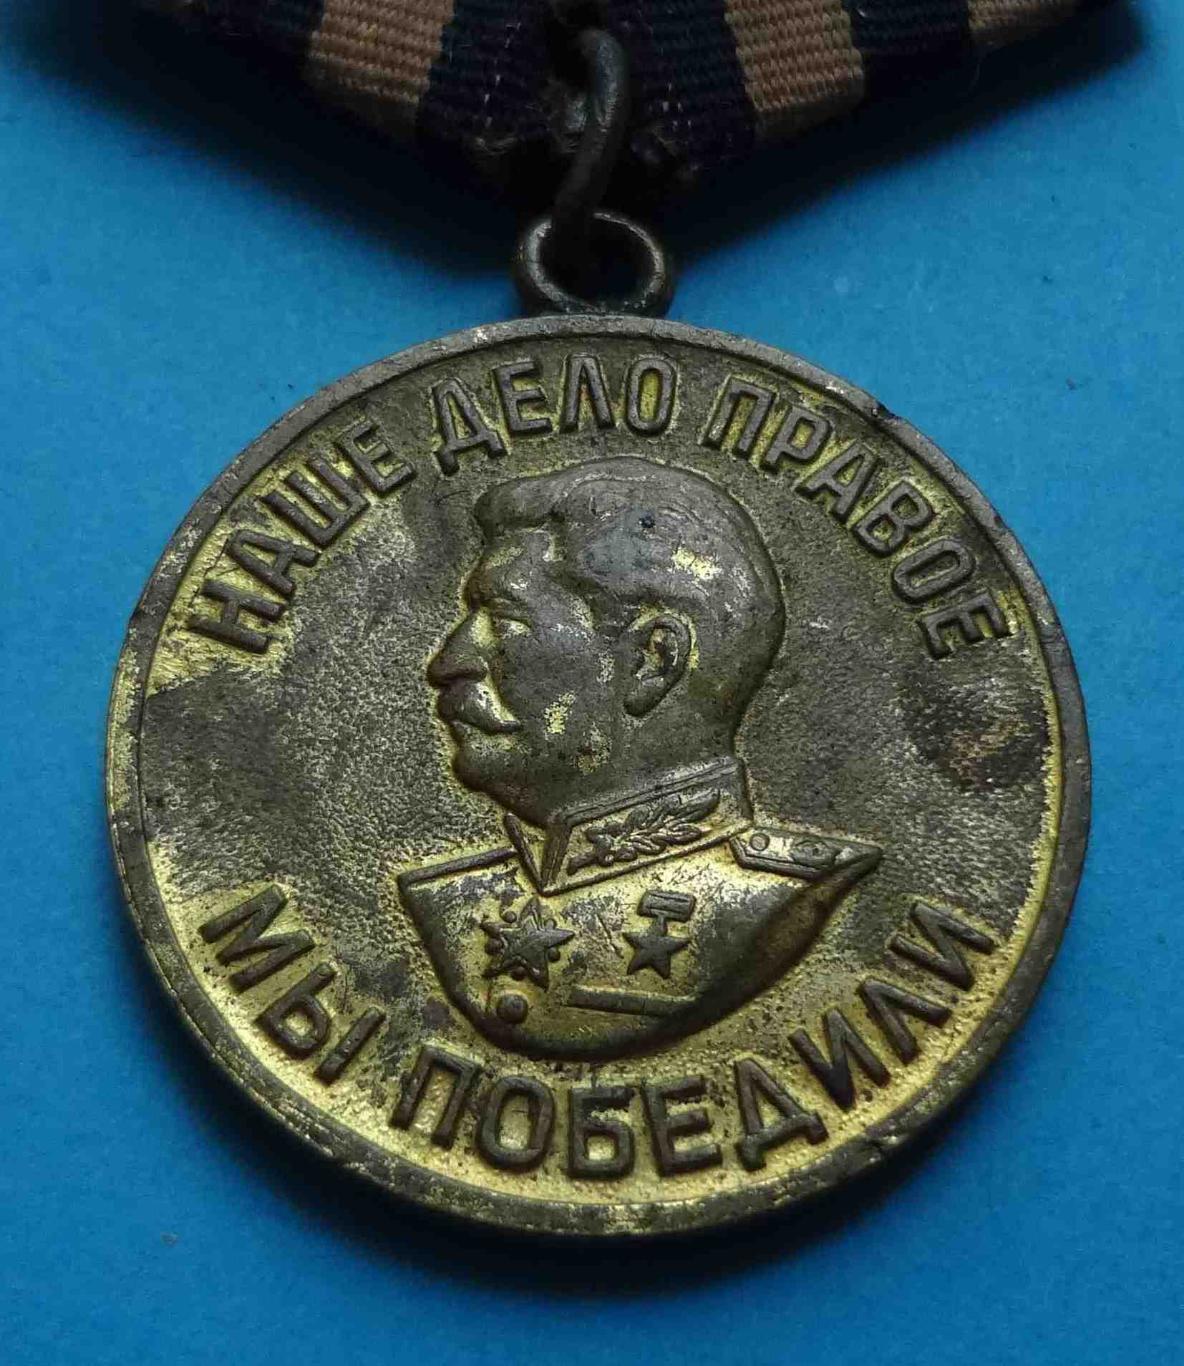 Медаль За победу над Германией в ВОВ Наше дело правое 1941-1945 боевая двойная 2 1